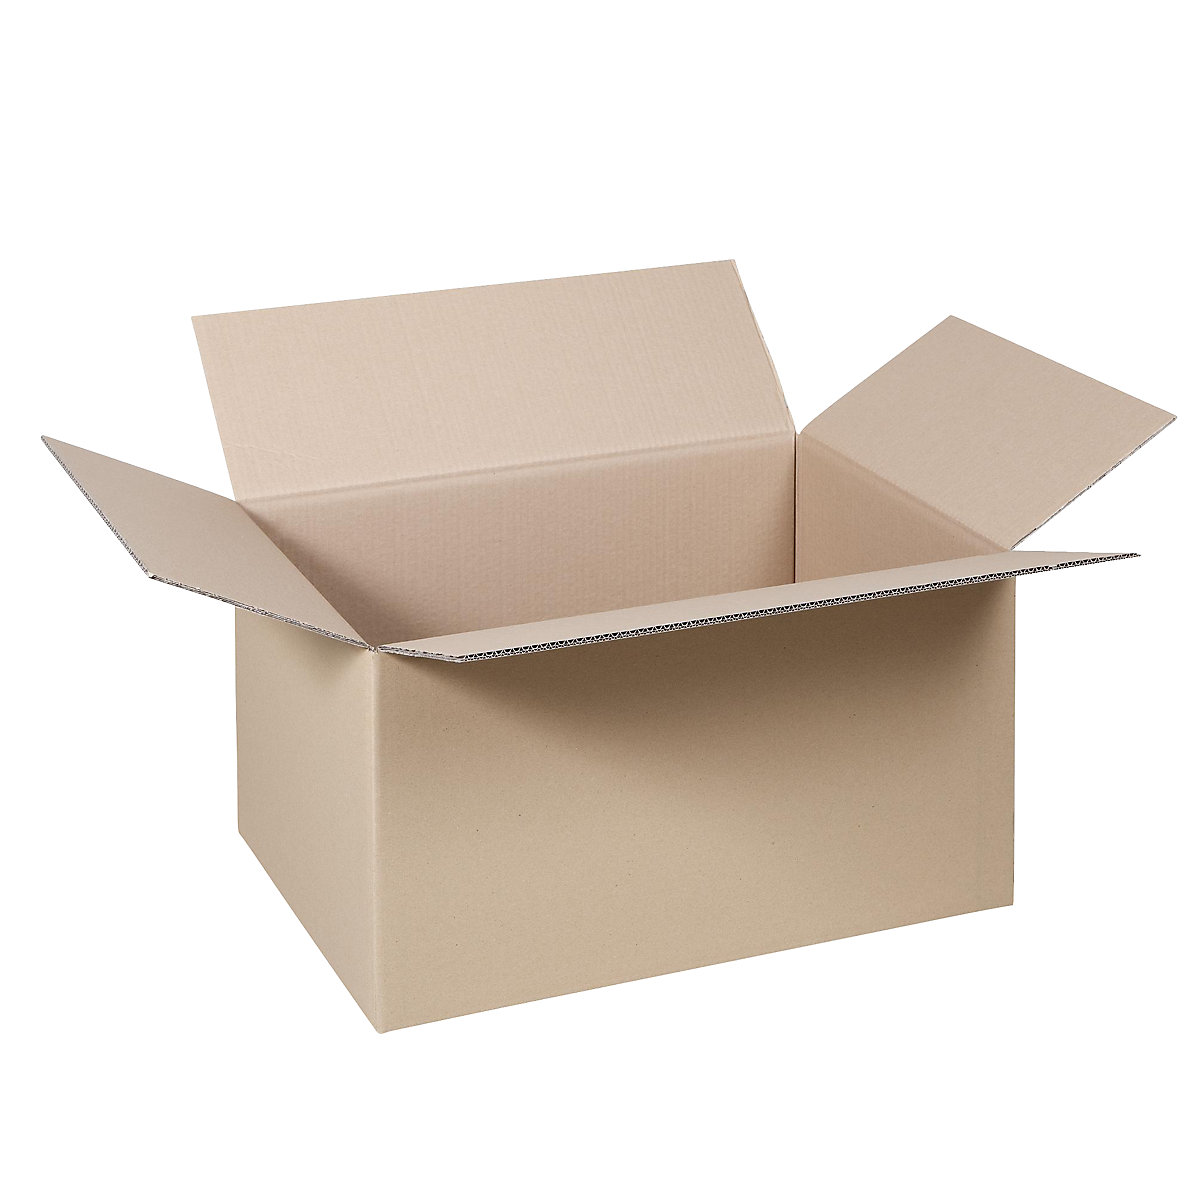 Cutie de carton pliantă, FEFCO 0201, cu 2 straturi de carton ondulat, dimensiuni interioare 410 x 320 x 240 mm, amb. 50 buc.-48